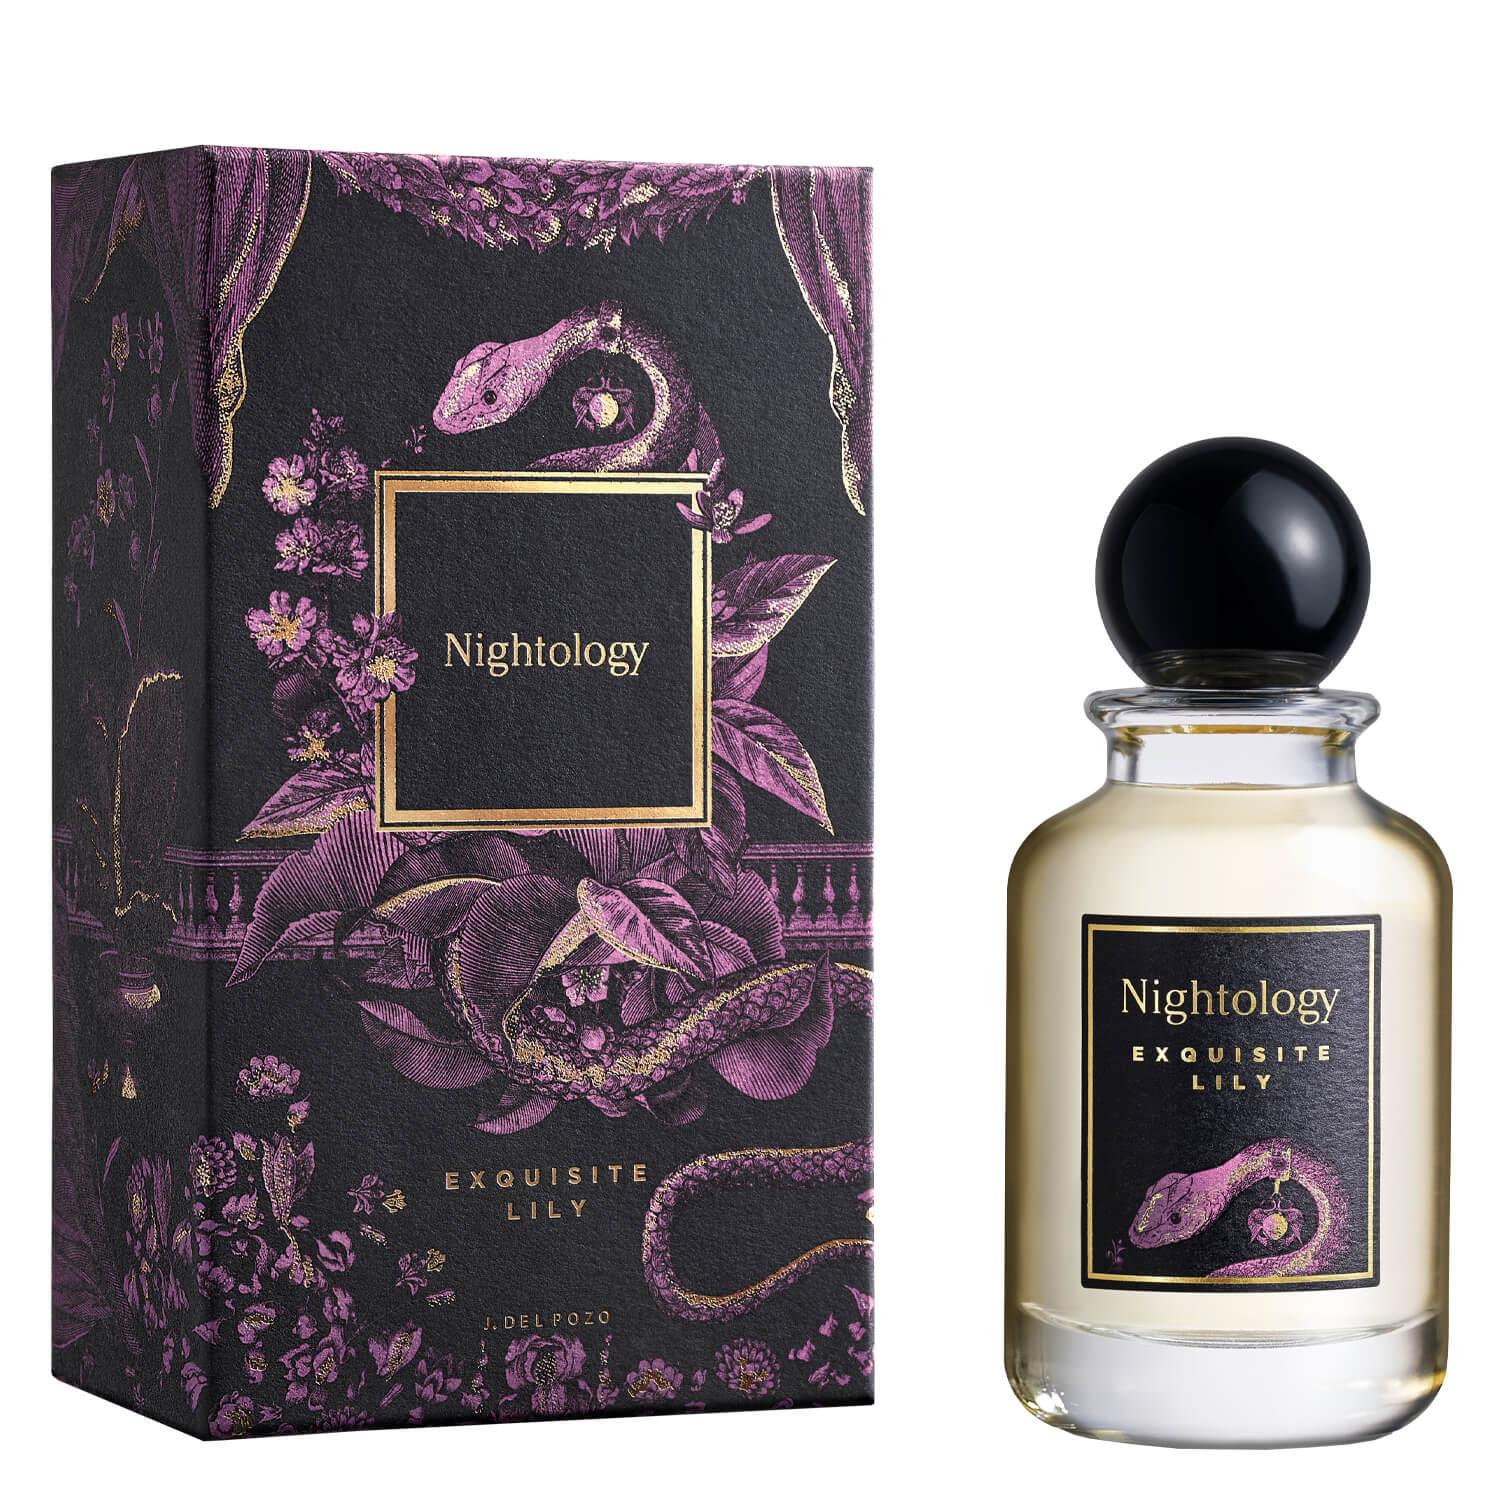 Nightology - Exquisite Lily Eau de Parfum